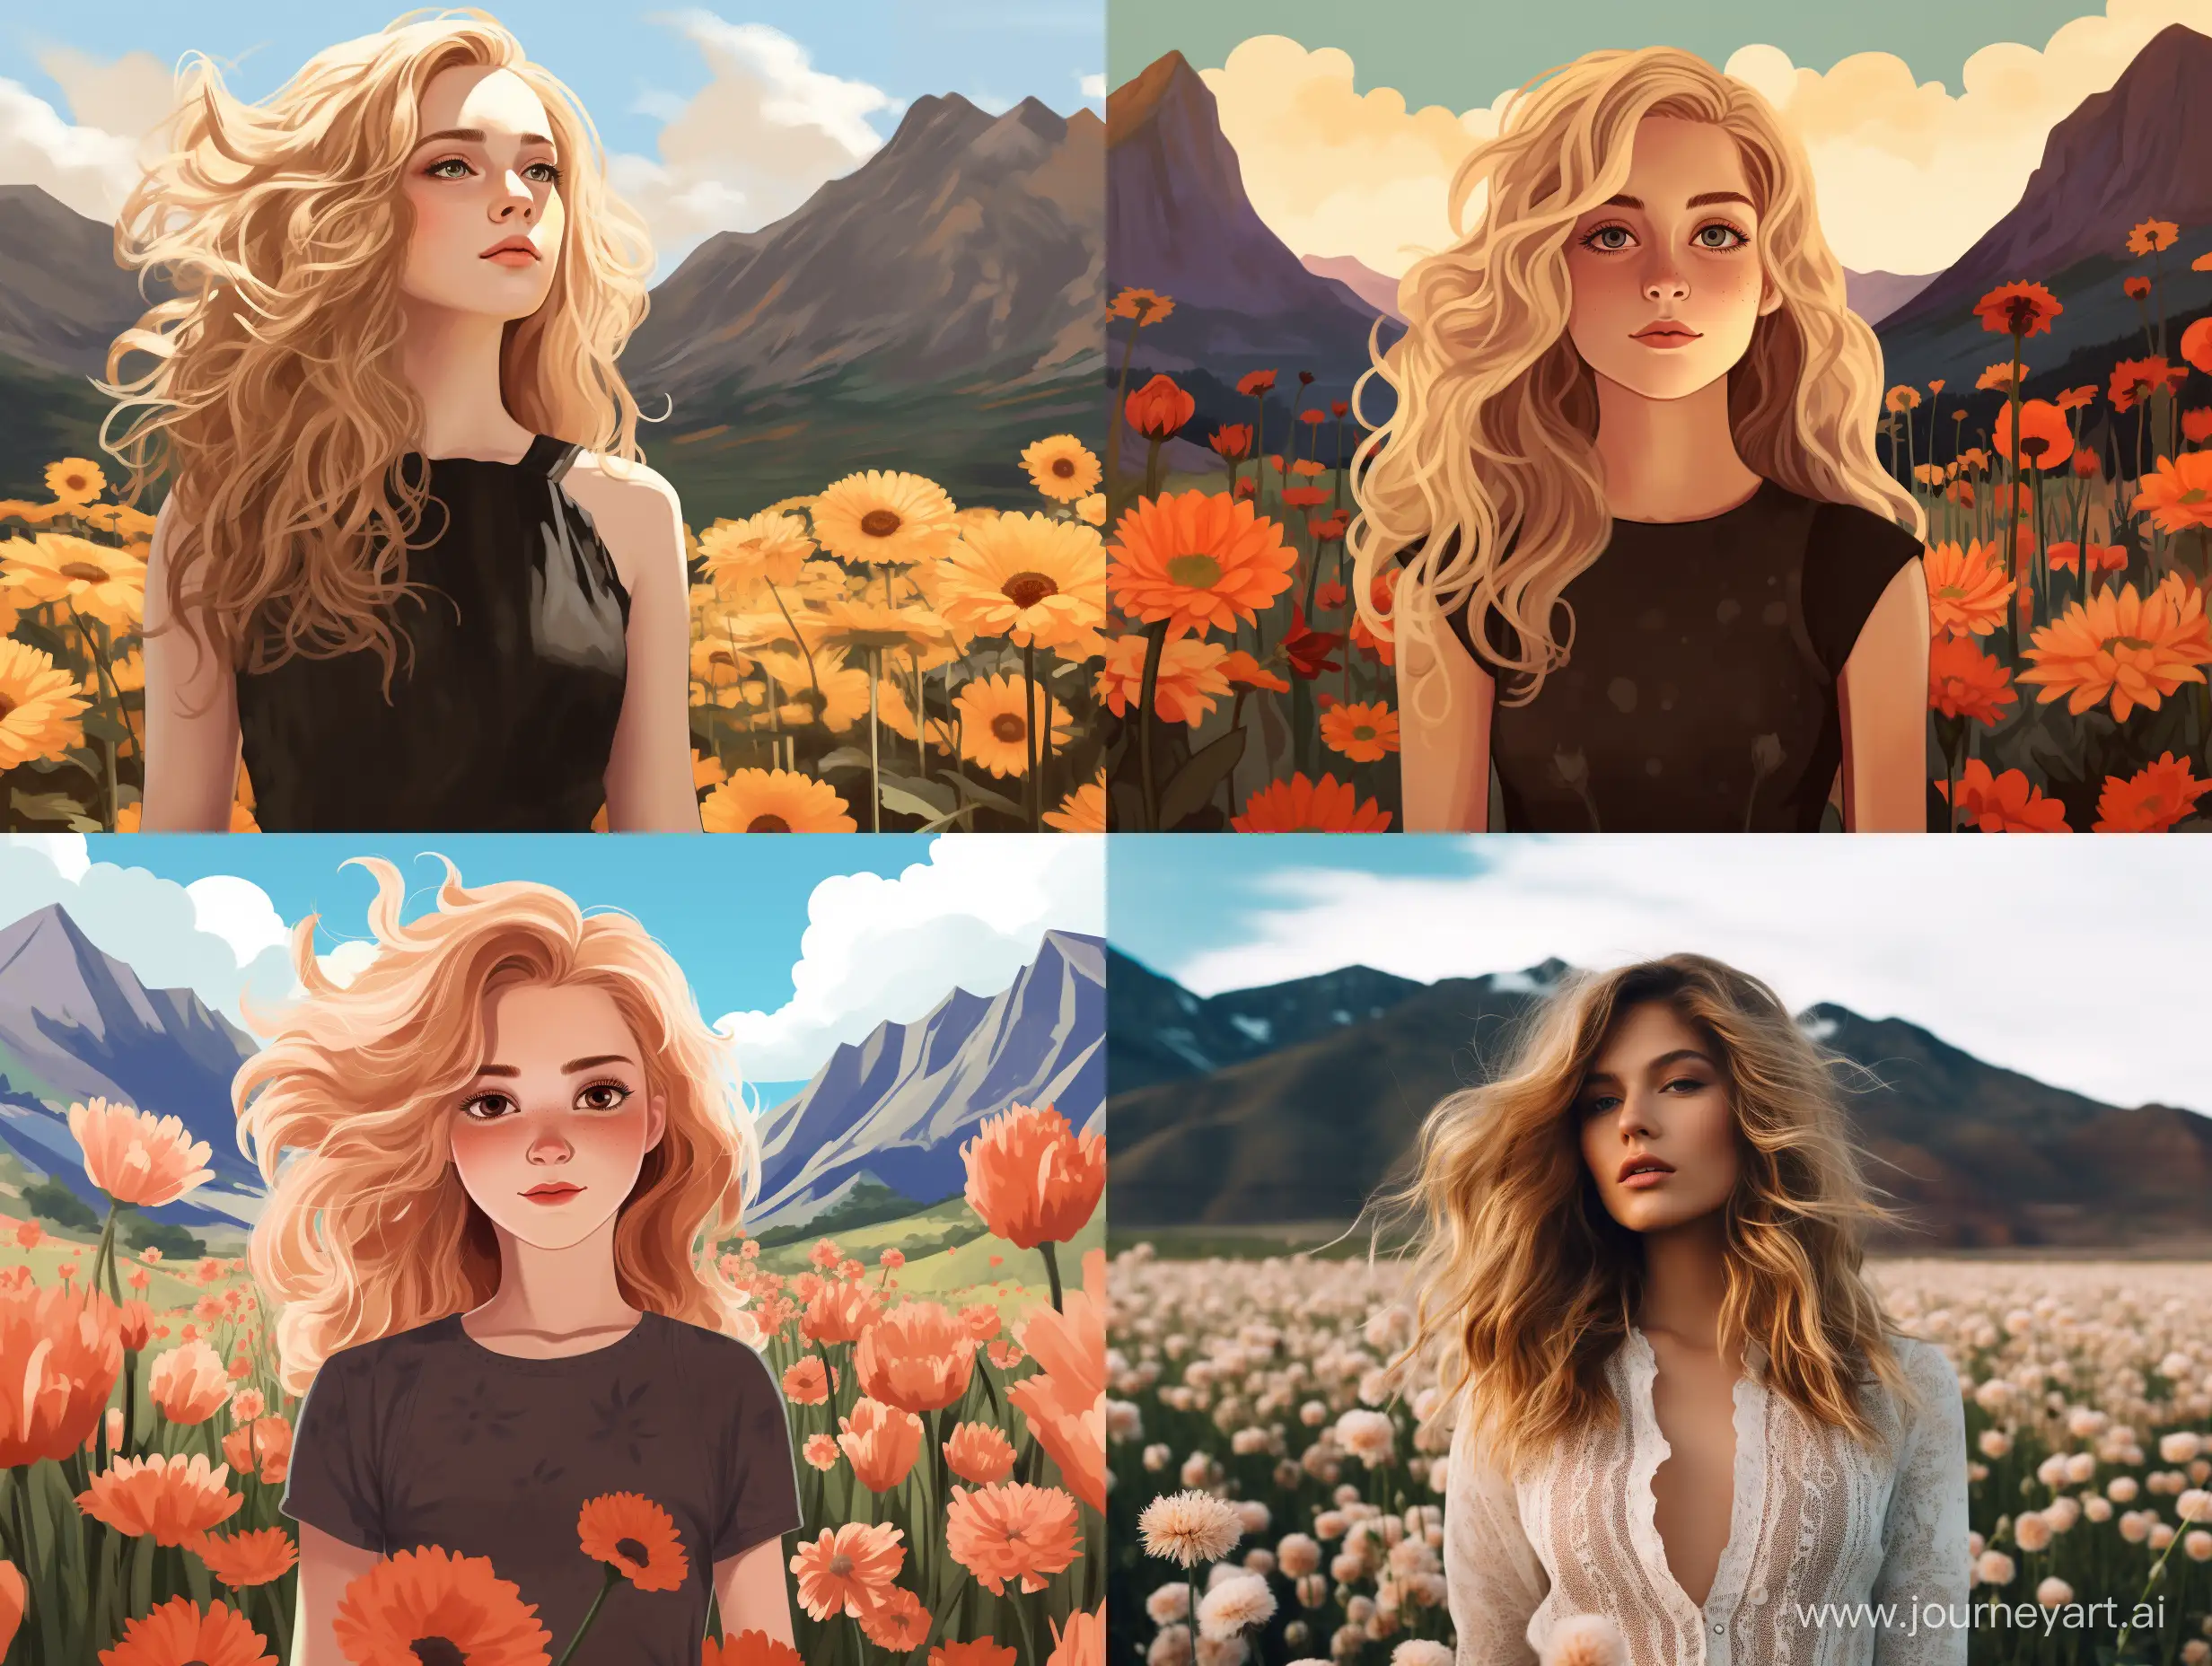 BlondishHaired-Girl-Posing-Against-Mountain-Backdrop-in-Flower-Field